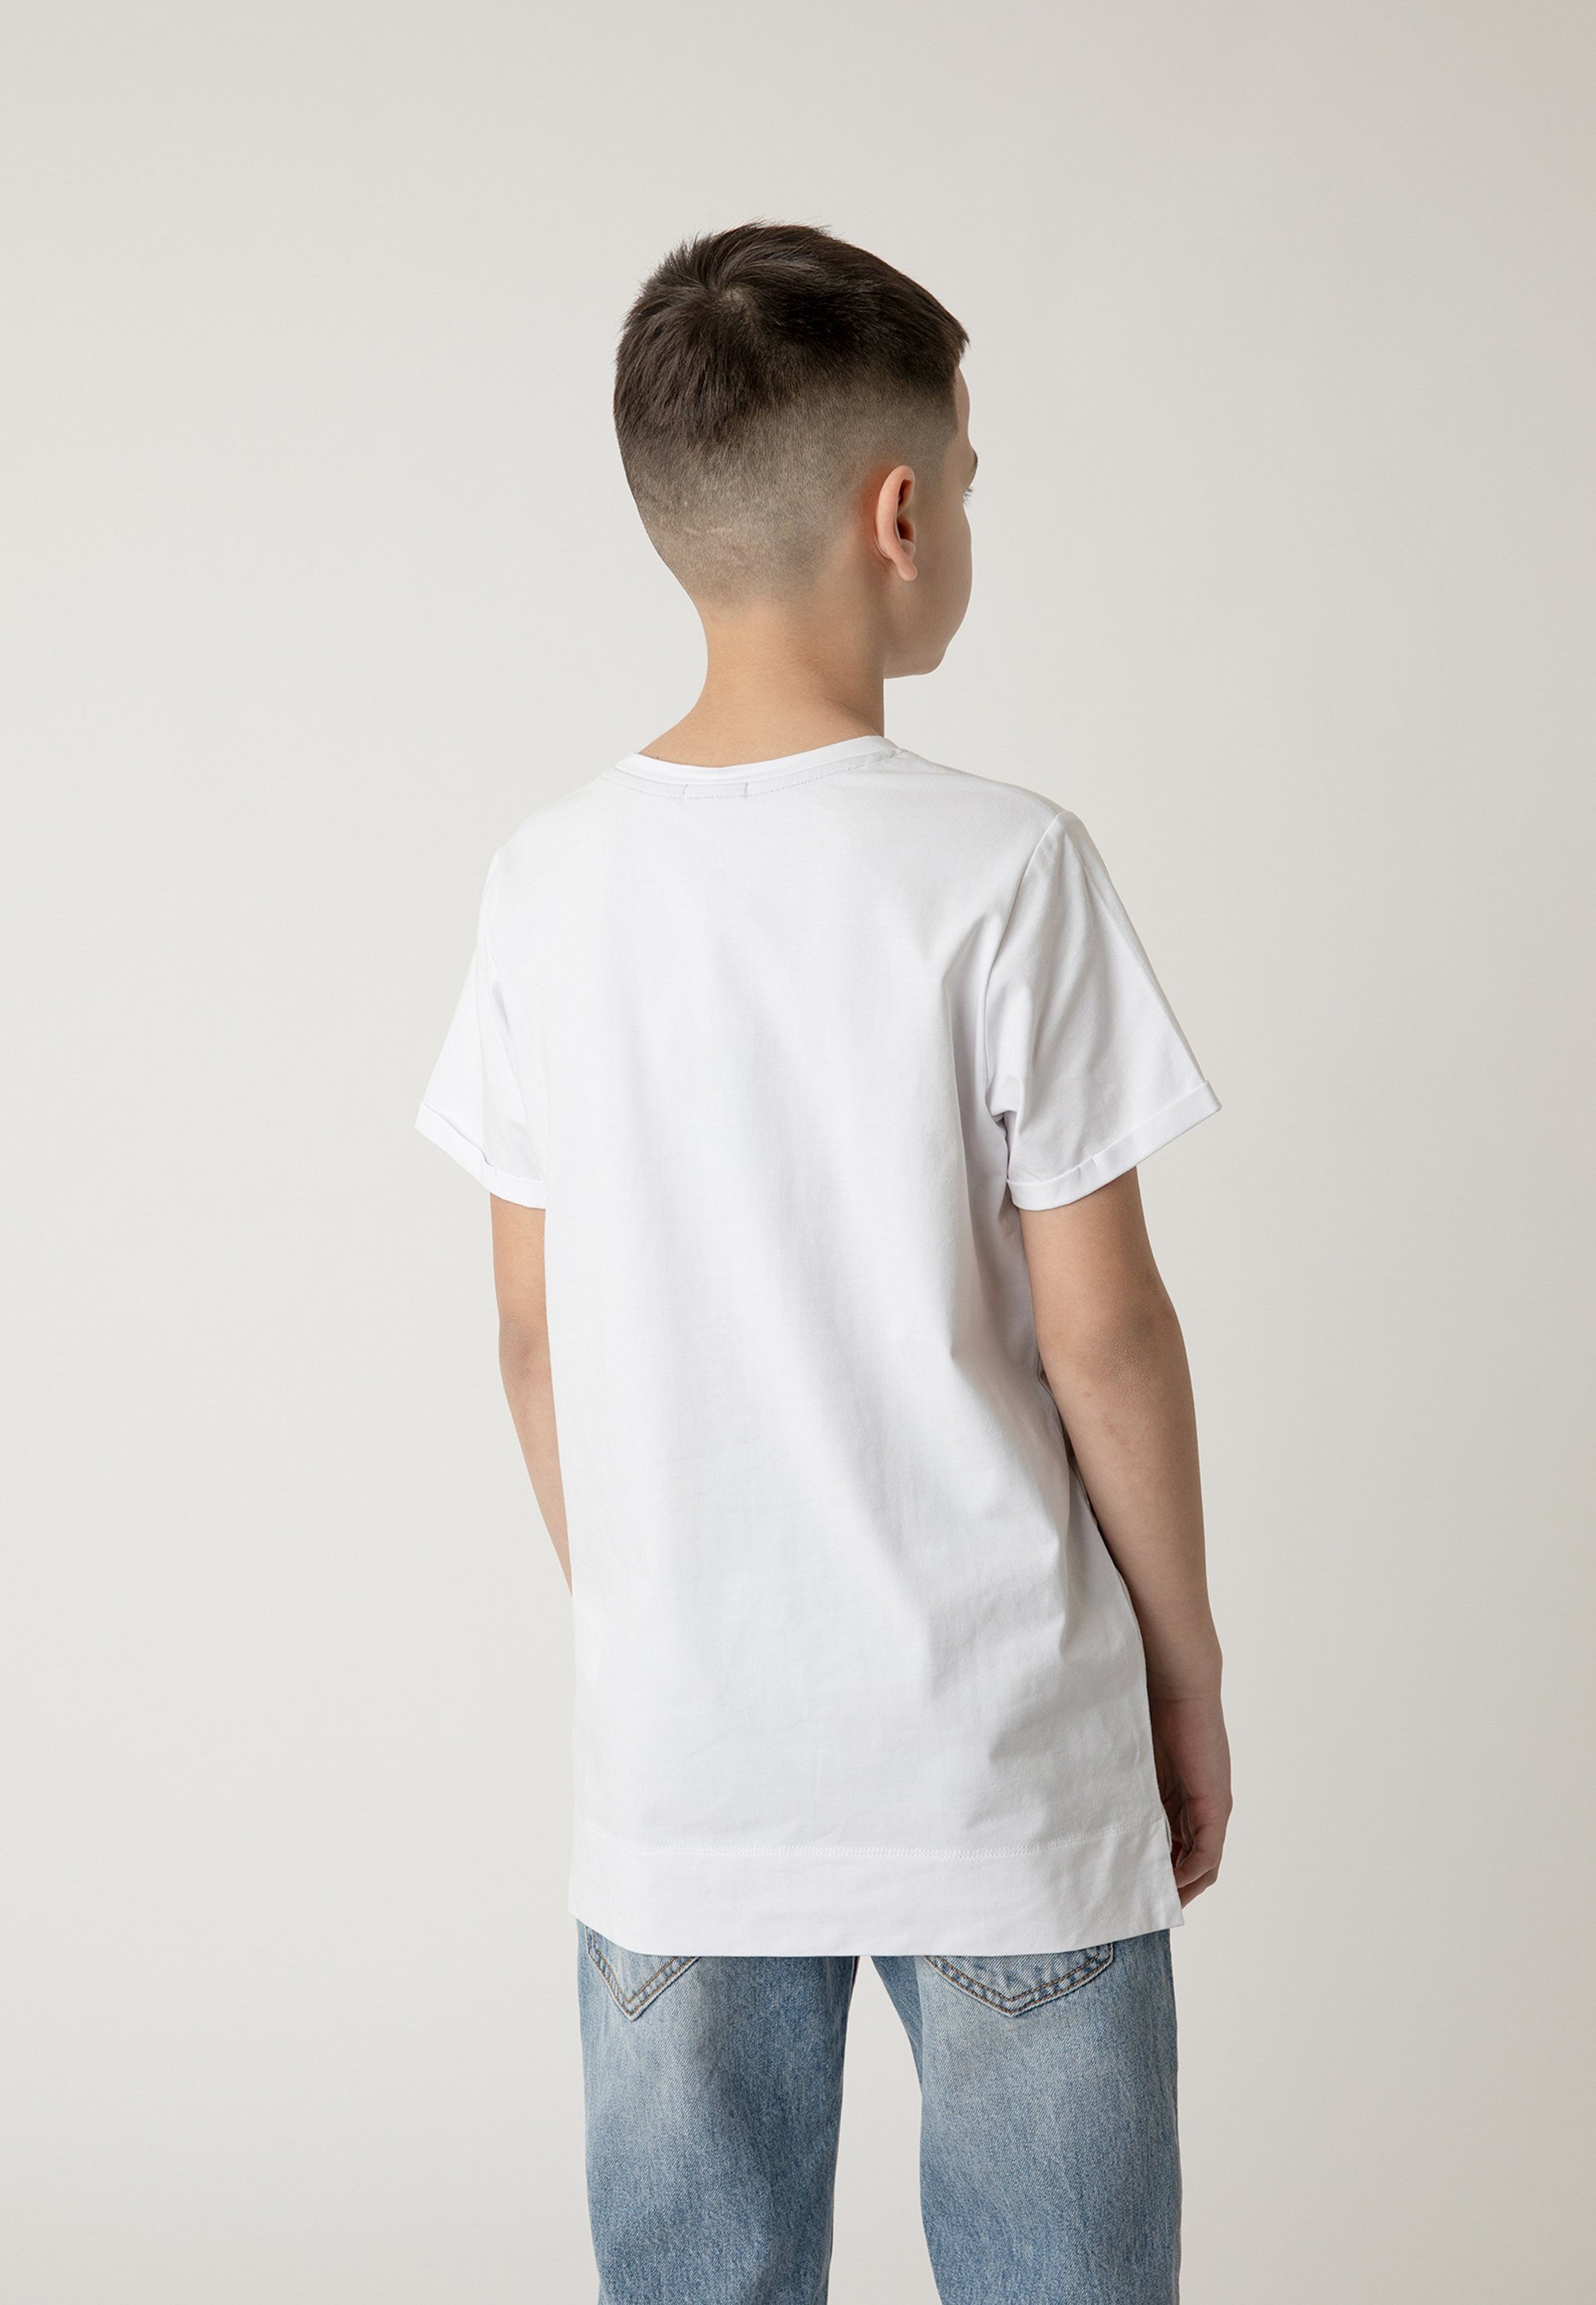 stylischem Tragekomfort absoluten Aus T-Shirt hochwertigem Frontprint, mit Gulliver Material für